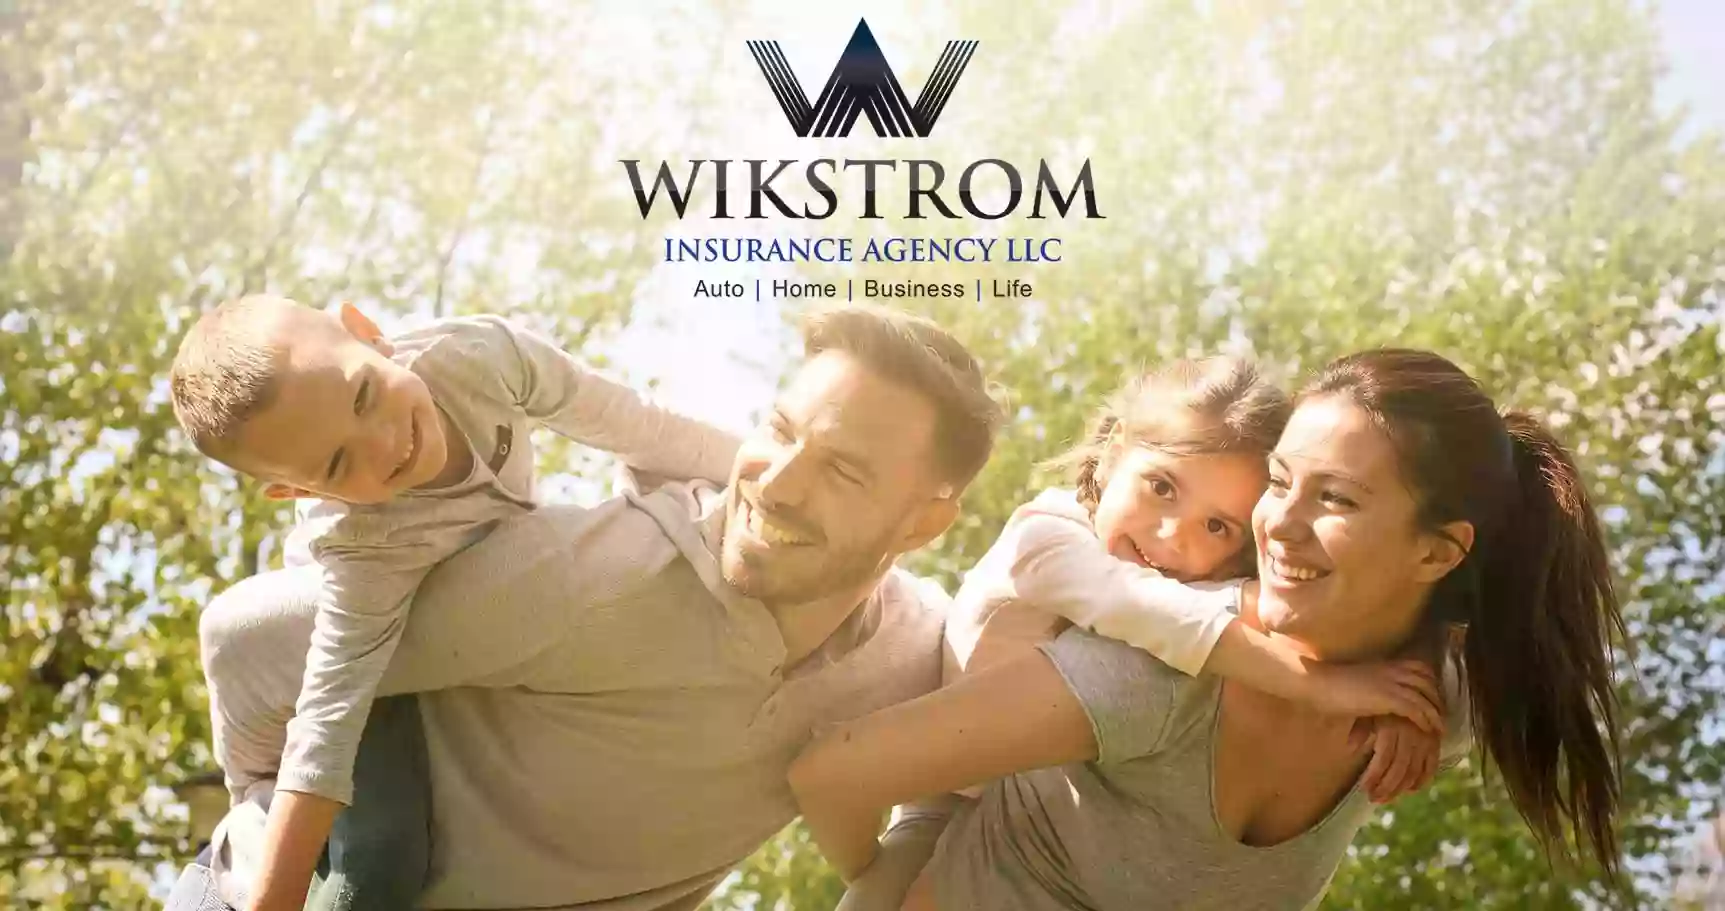 Wikstrom Insurance Agency LLC